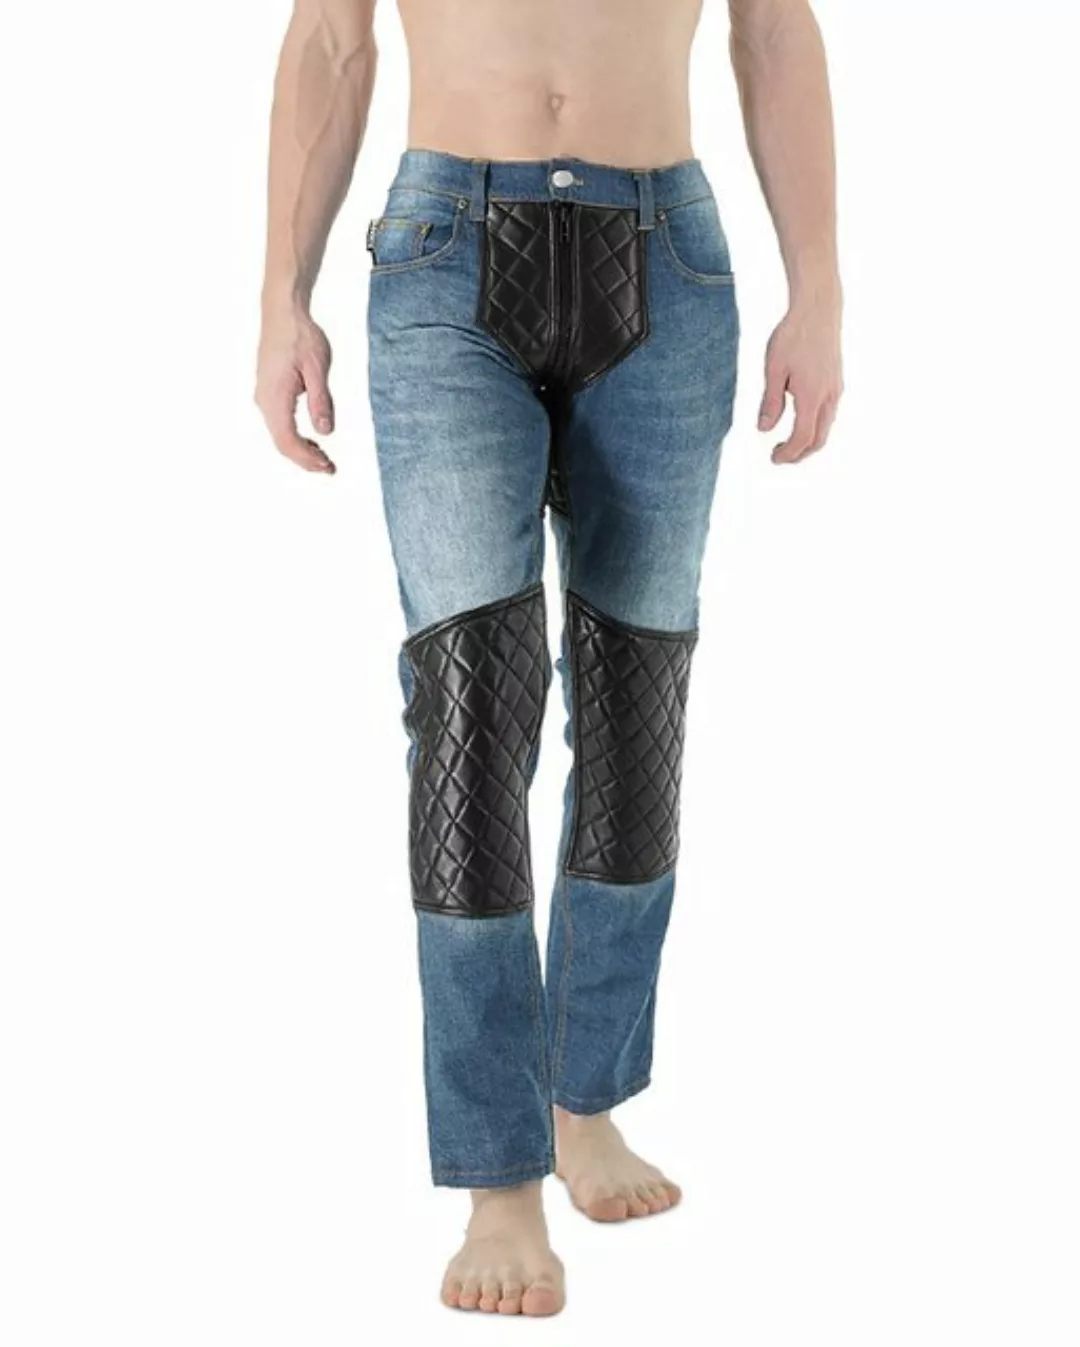 BOCKLE Lederhose Bockle® 1 GAY-ZIP Jeans and Leather Herren Lederjeans günstig online kaufen